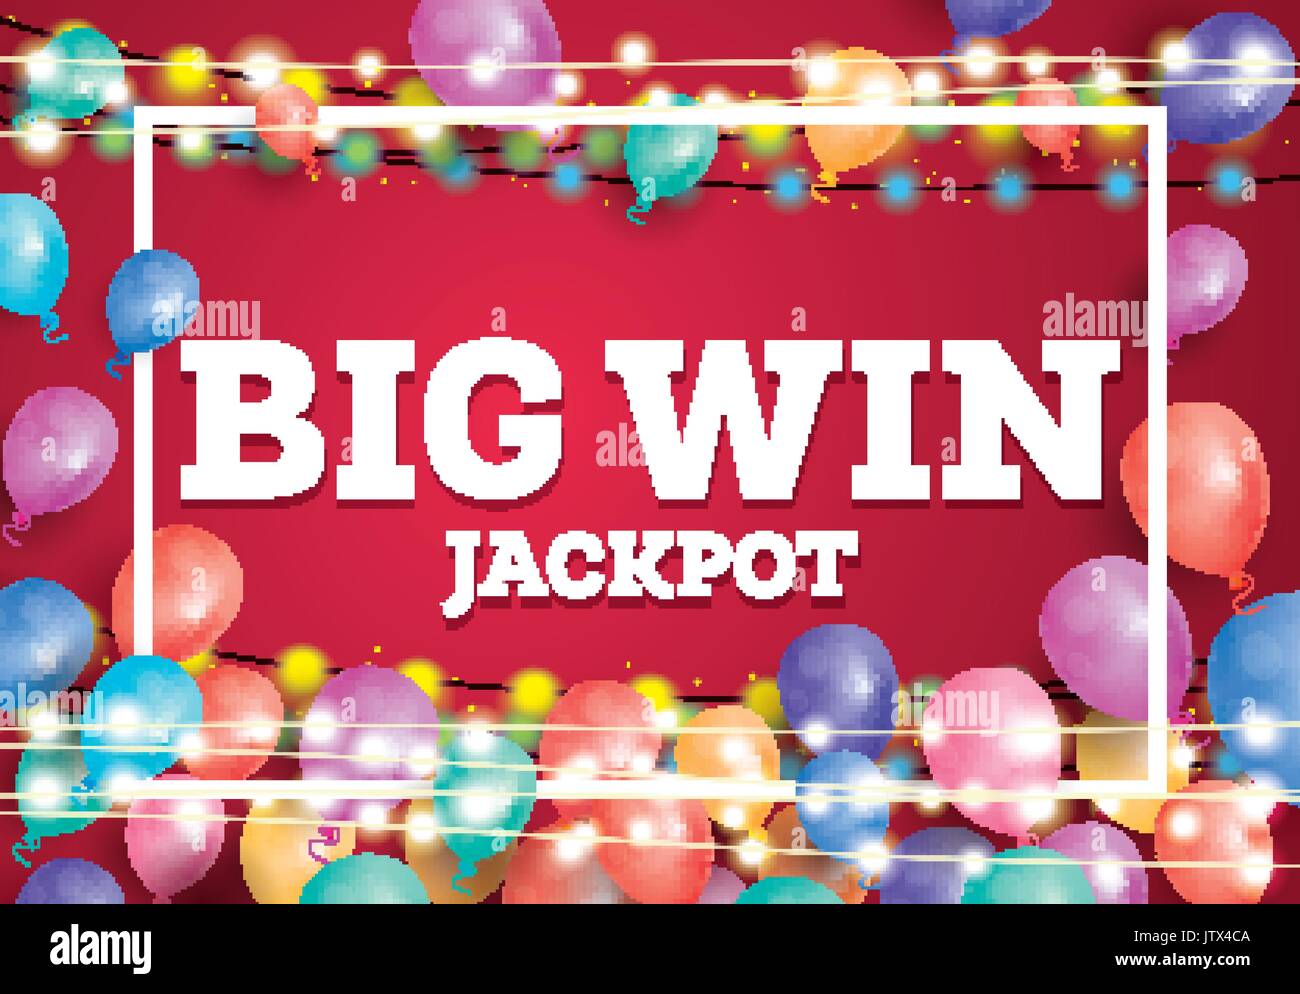 Grosser Gewinn Jackpot Banner mit fliegenden Ballons und weißen Rahmen. Vector Illustration. Stock Vektor